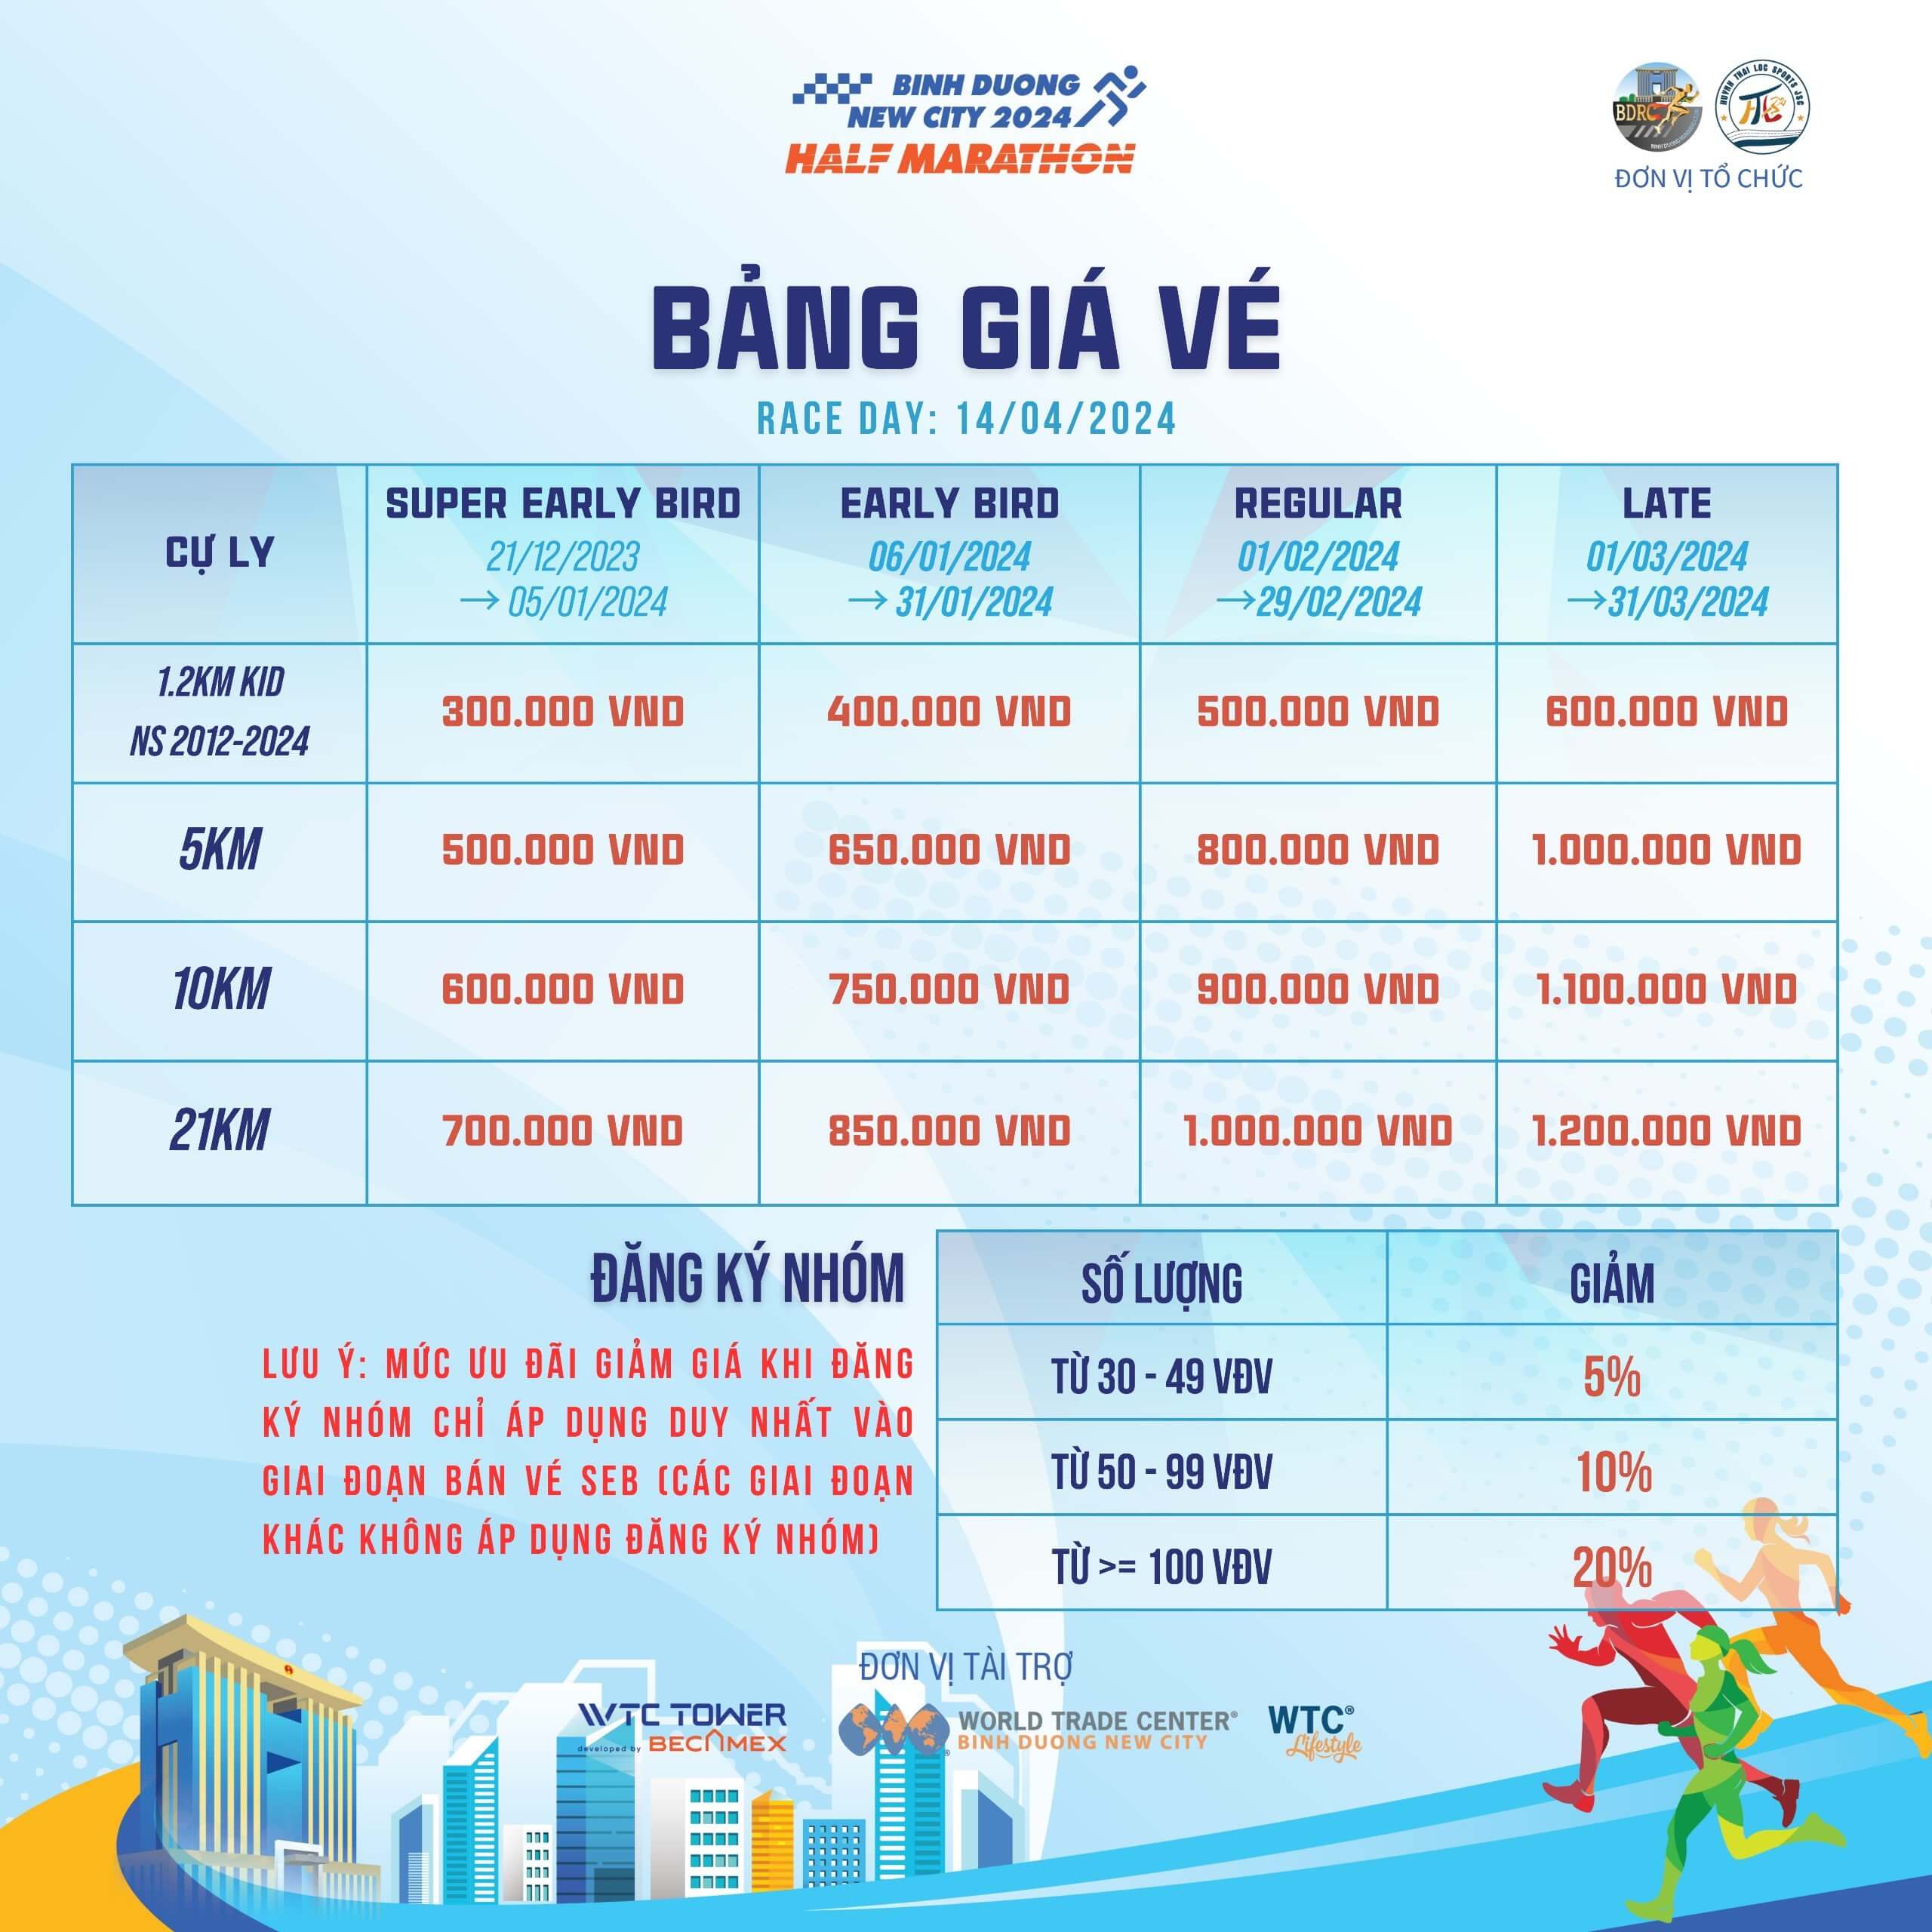 Binh Duong New City Half Marathon 2024 - binh duong new city half marathon 2024 gia ve